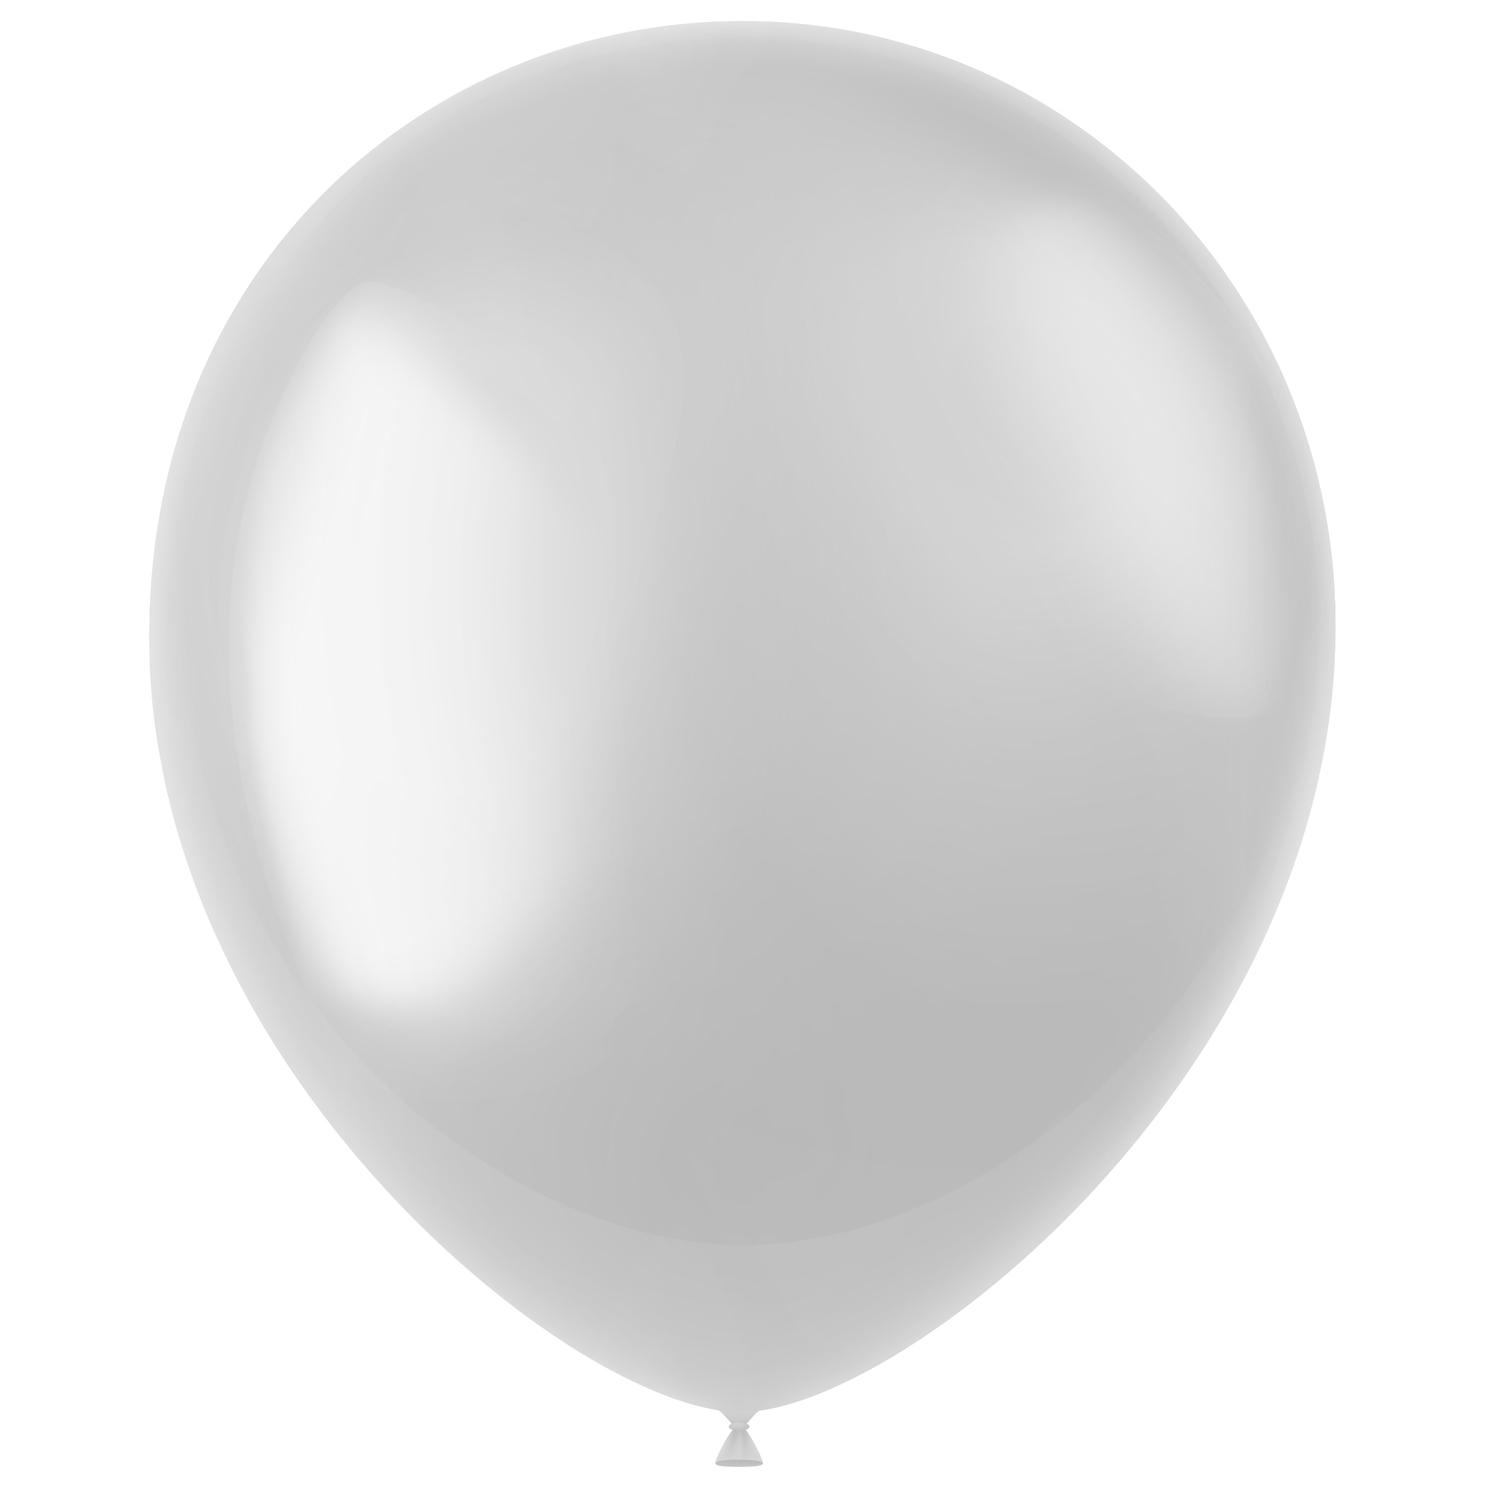 Latex-Luftballons glänzend, 33cm, weiß, 10 Stück, Metallic-Ballons